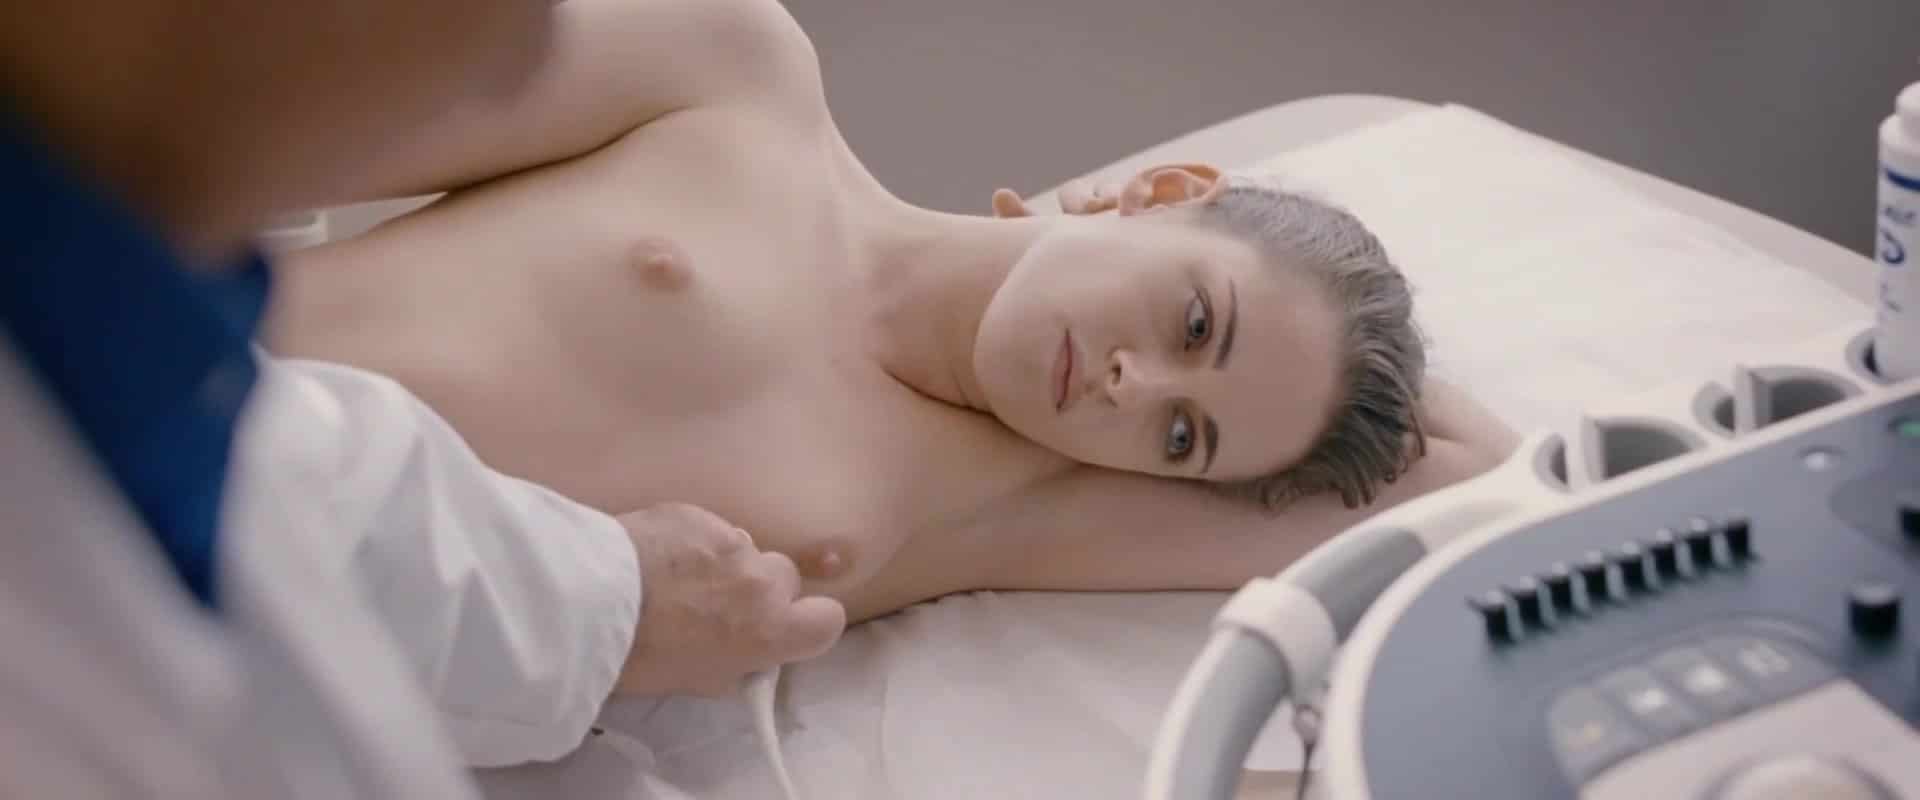 Kristen Stewart nude boobs